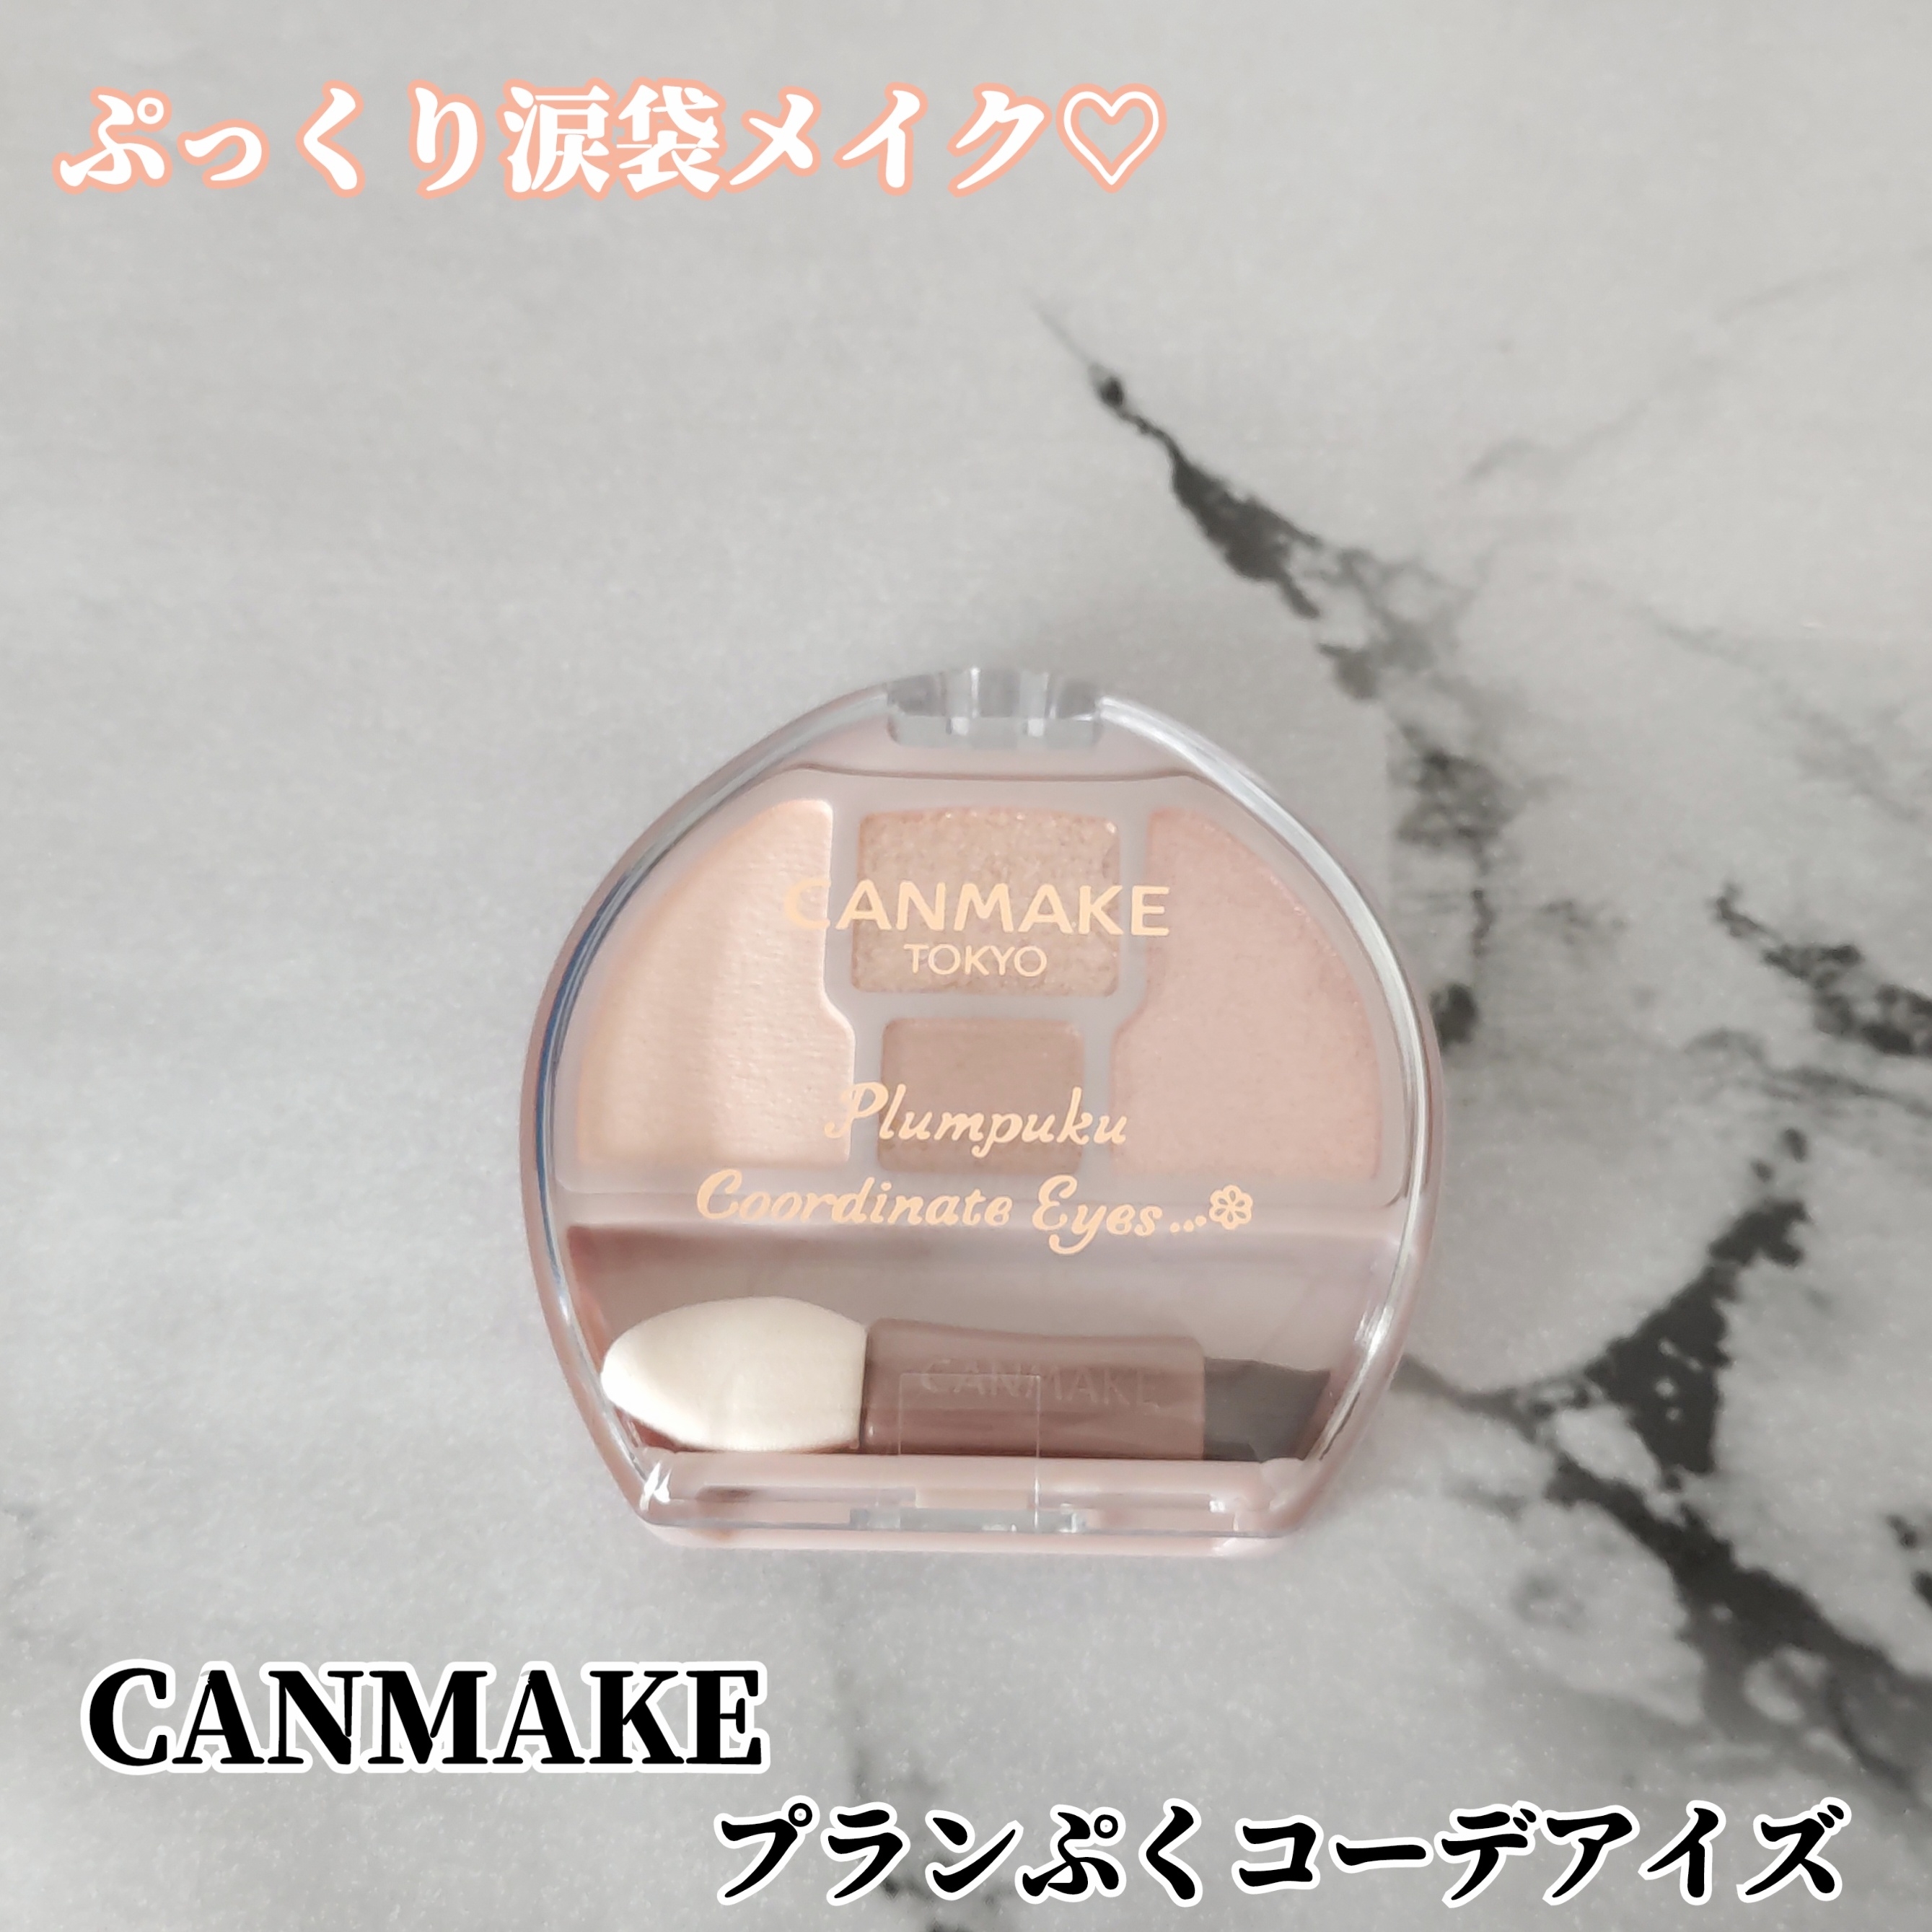 CANMAKE(キャンメイク) プランぷくコーデアイズの良い点・メリットに関するYuKaRi♡さんの口コミ画像1